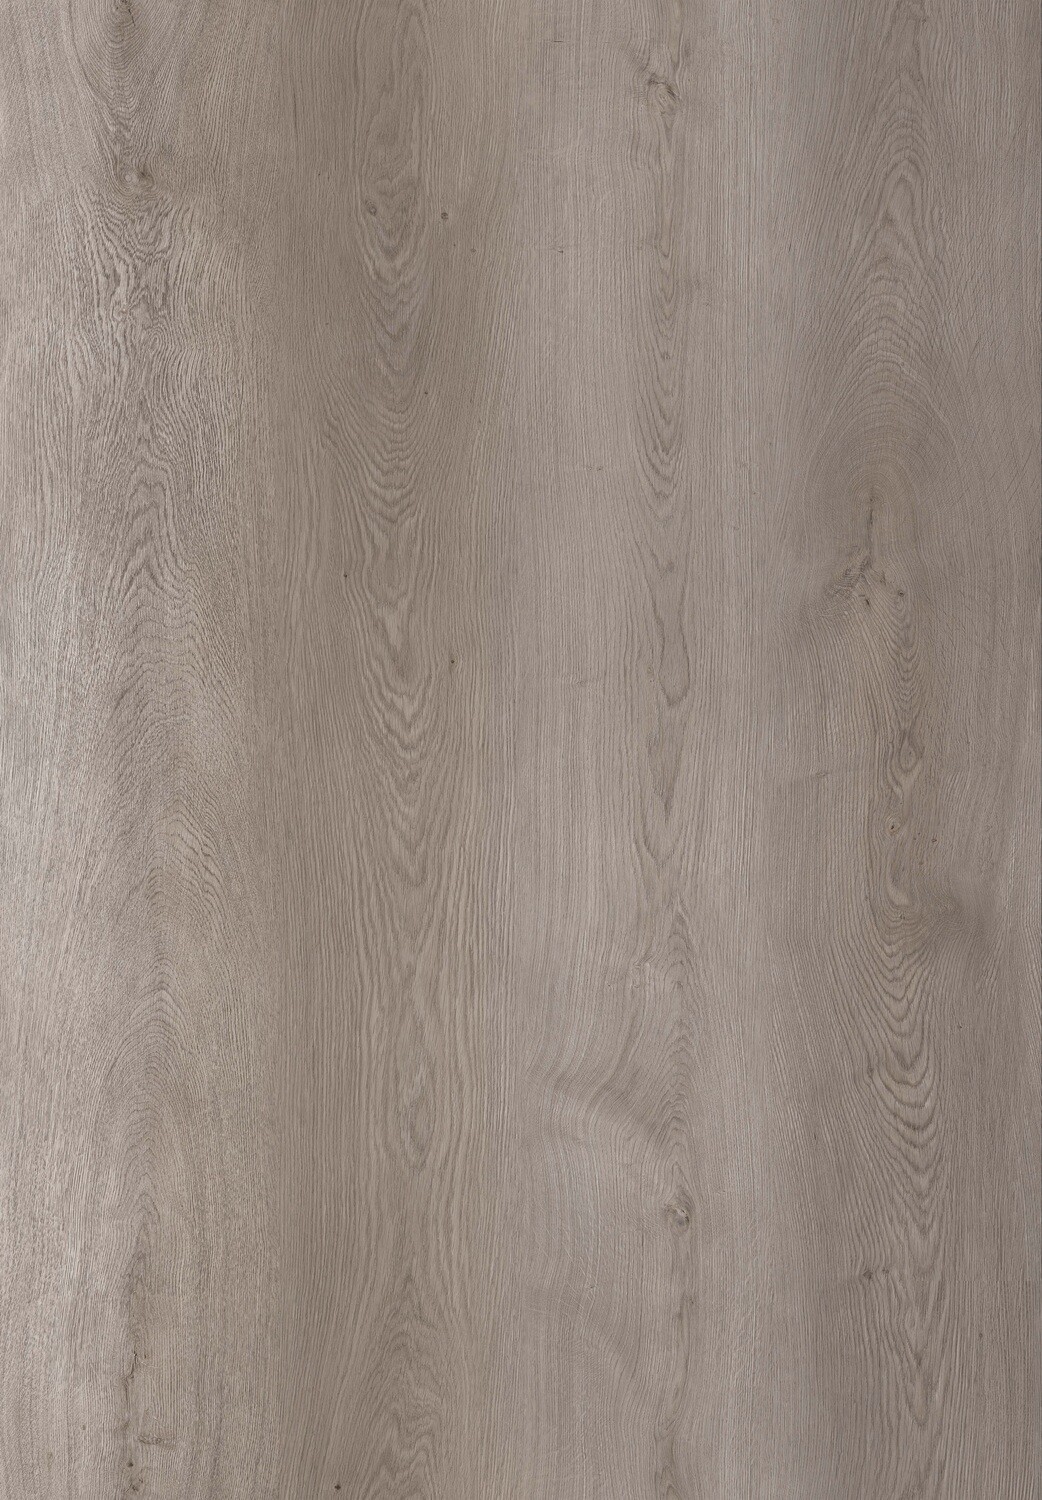 Vinylboden Grey Majestic Oak mit Trittschall 1.5mm pro 1m² Stärke 8mm x 220mm x 1840mm